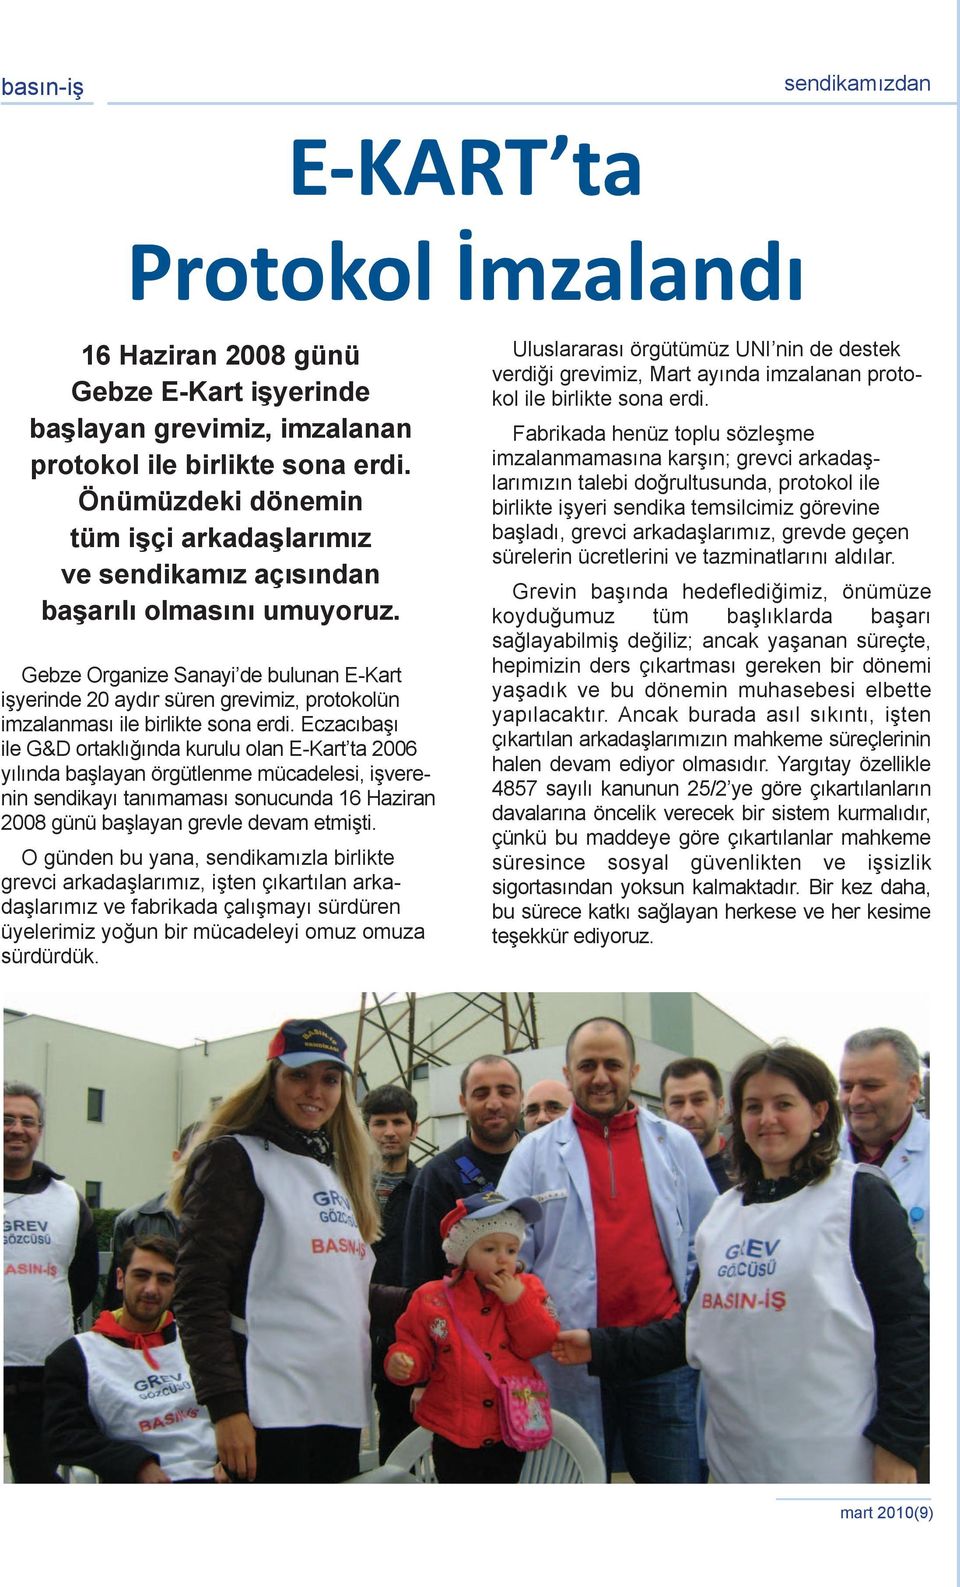 Gebze Organize Sanayi de bulunan E-Kart işyerinde 20 aydır süren grevimiz, protokolün imzalanması ile birlikte sona erdi.